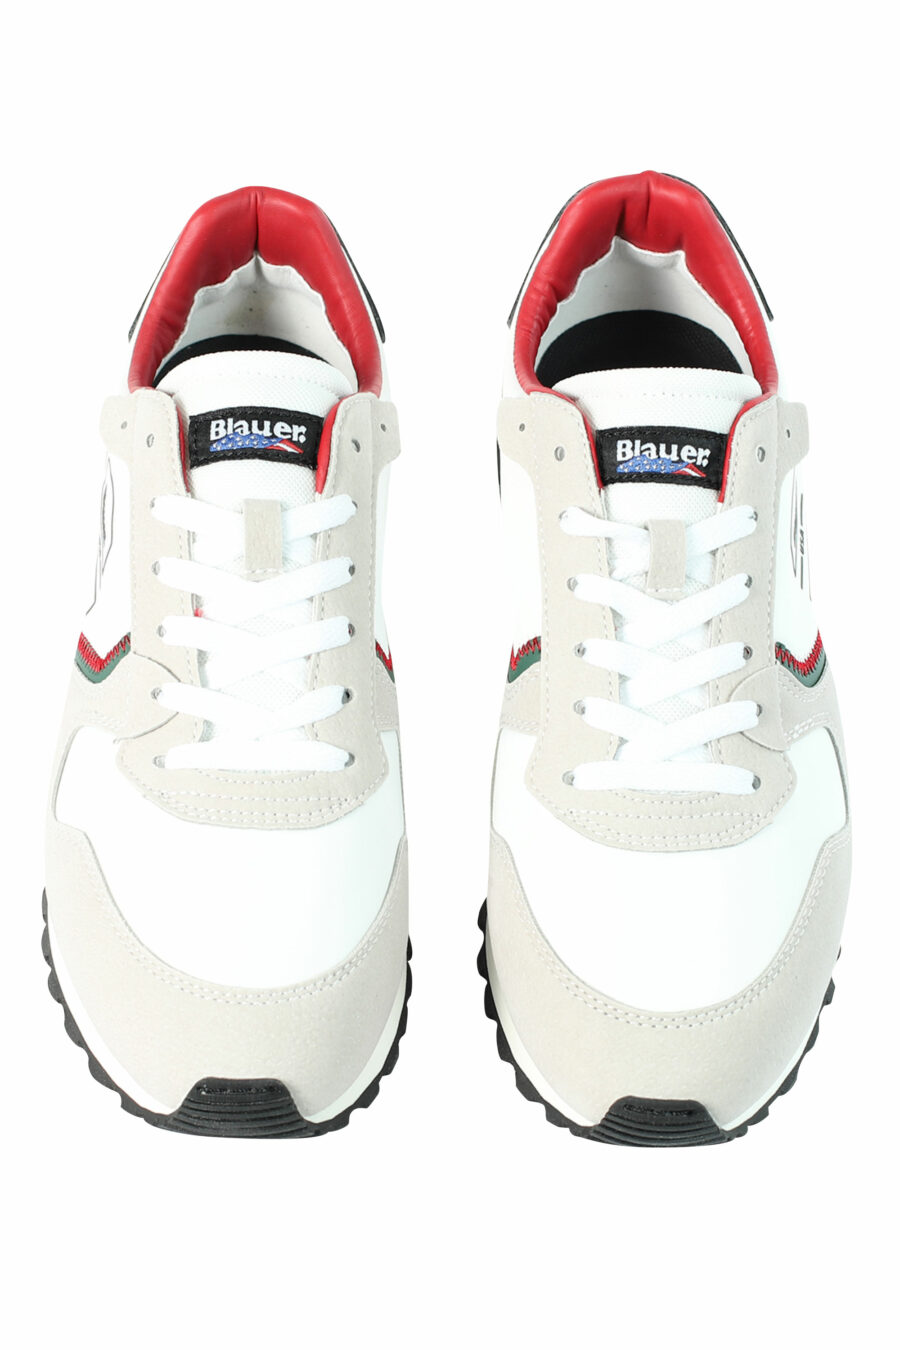 Zapatillas "DIXON" blancas mix con detalles rojos y verdes - 8058156493902 5